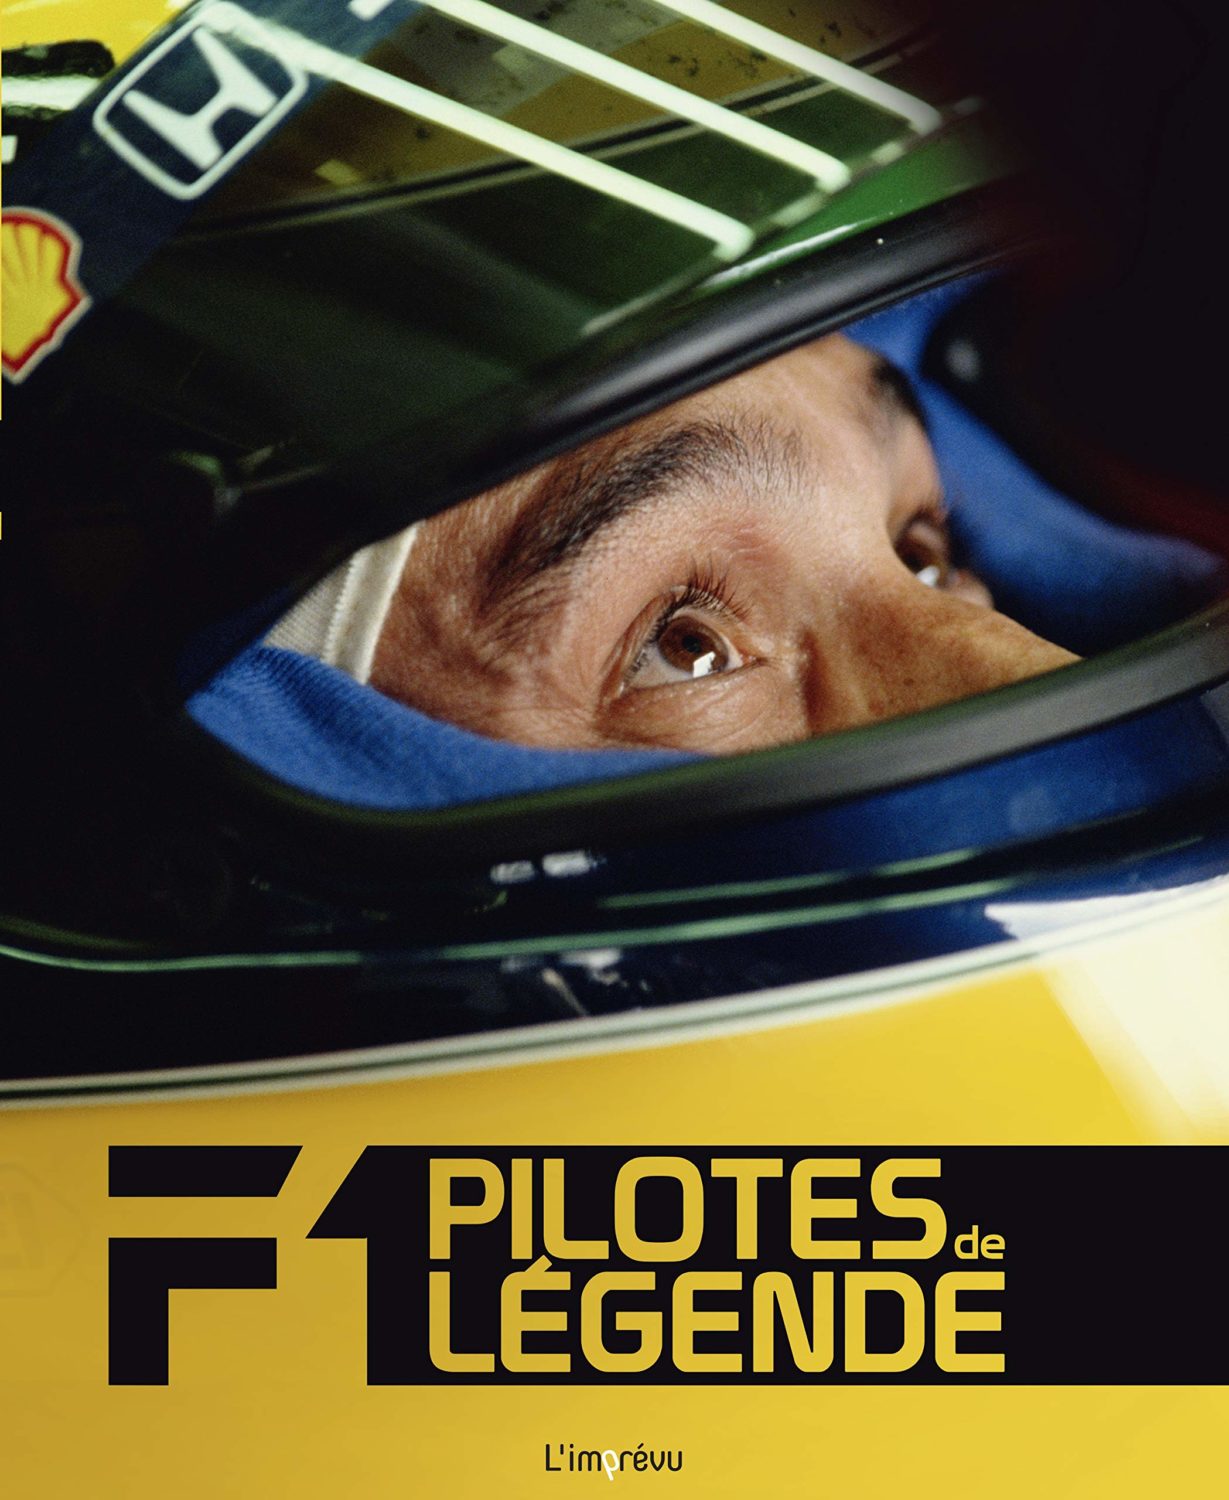 F1, pilotes de légende